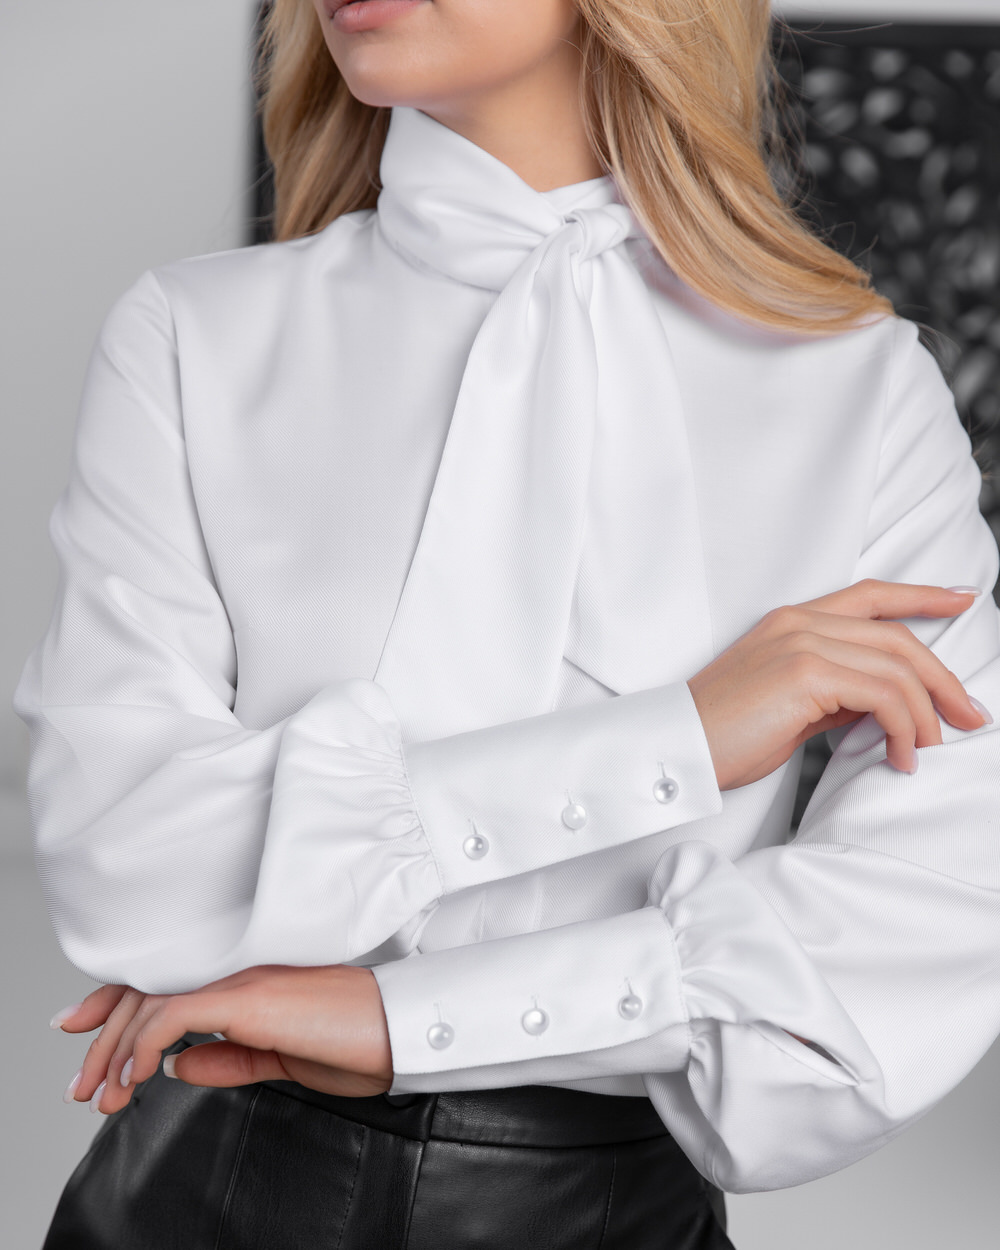 Женская блузка с бантом белая - 8171 (40) от ByME 